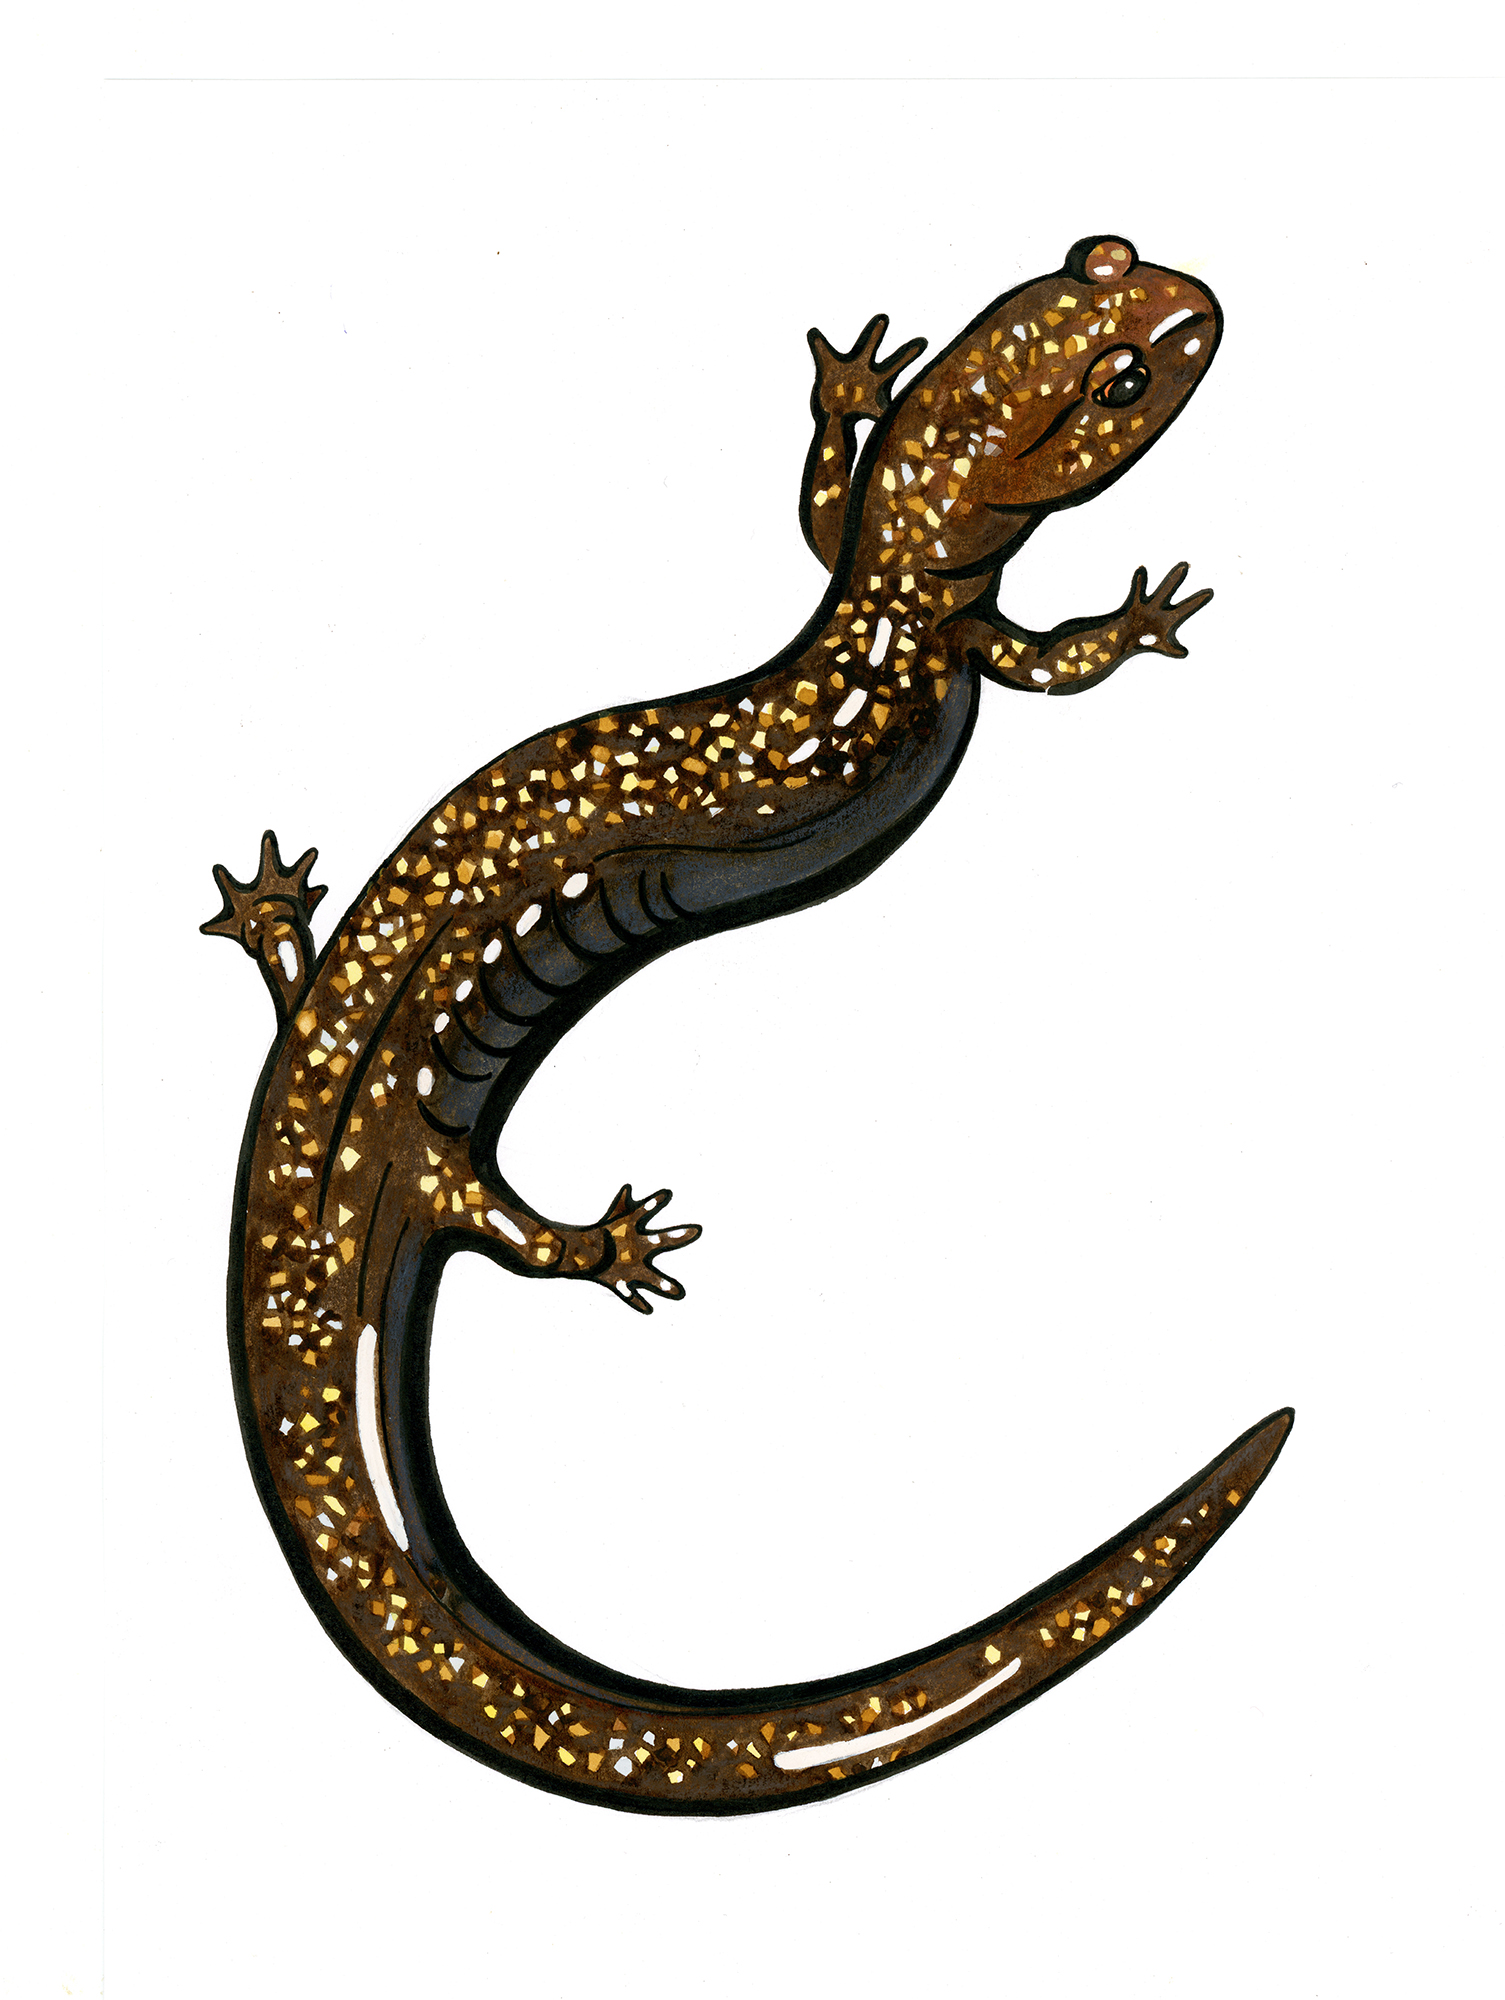 Illustration of a speckled salamander.